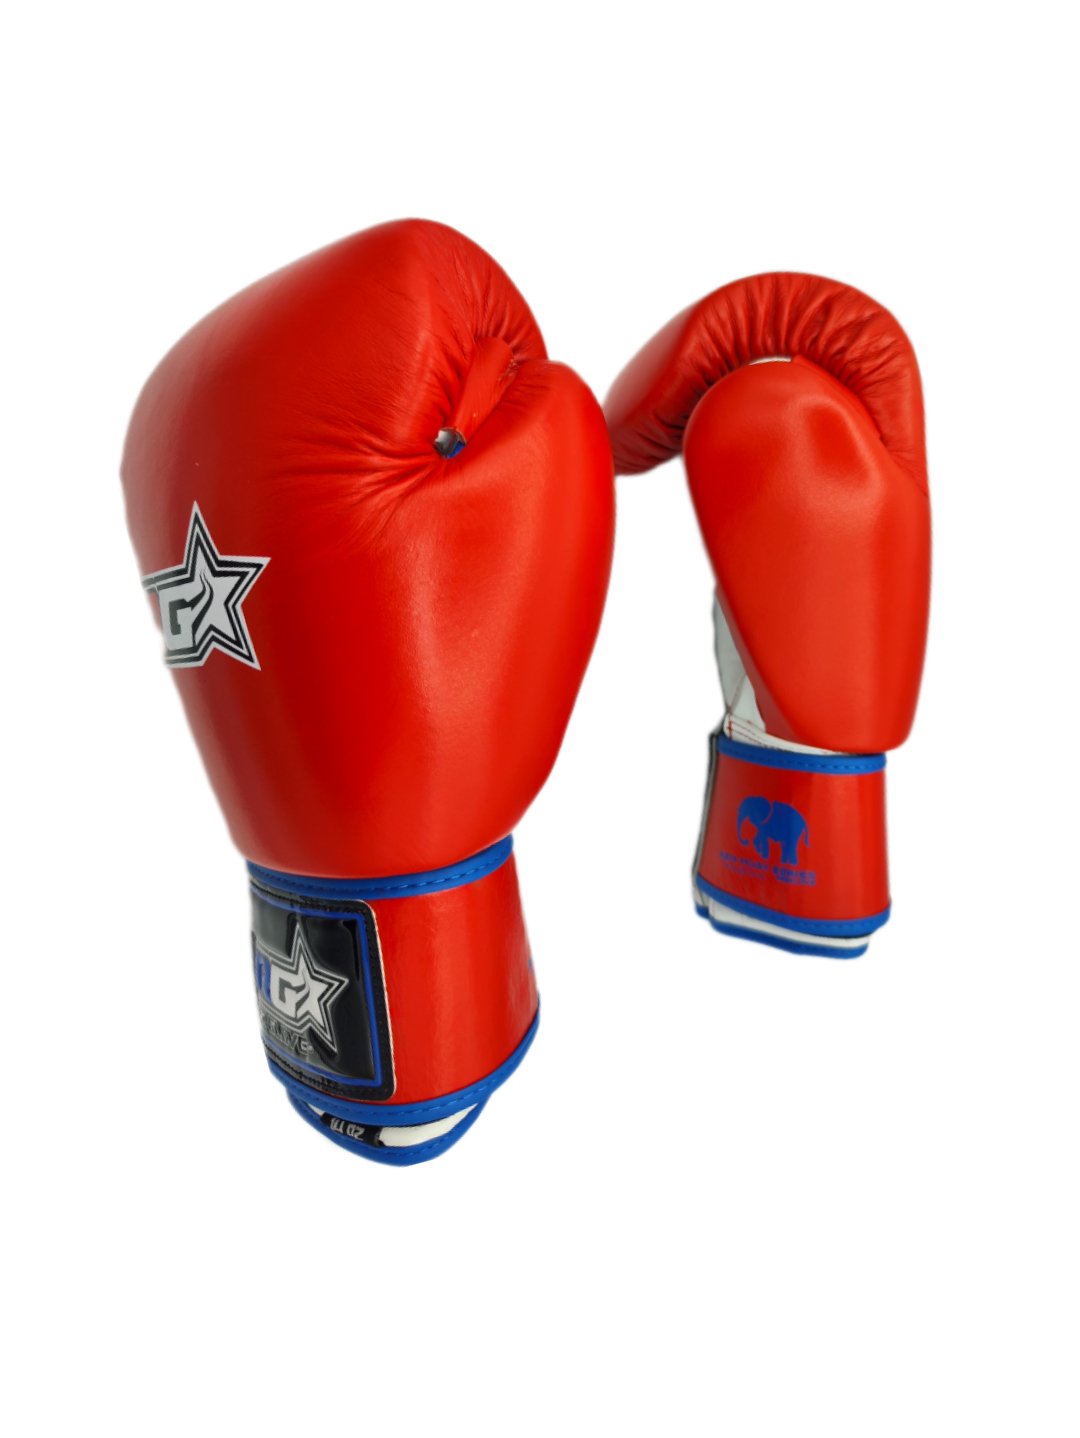 Guantes y tibiales Kick Boxing de segunda mano por 50 EUR en Santa